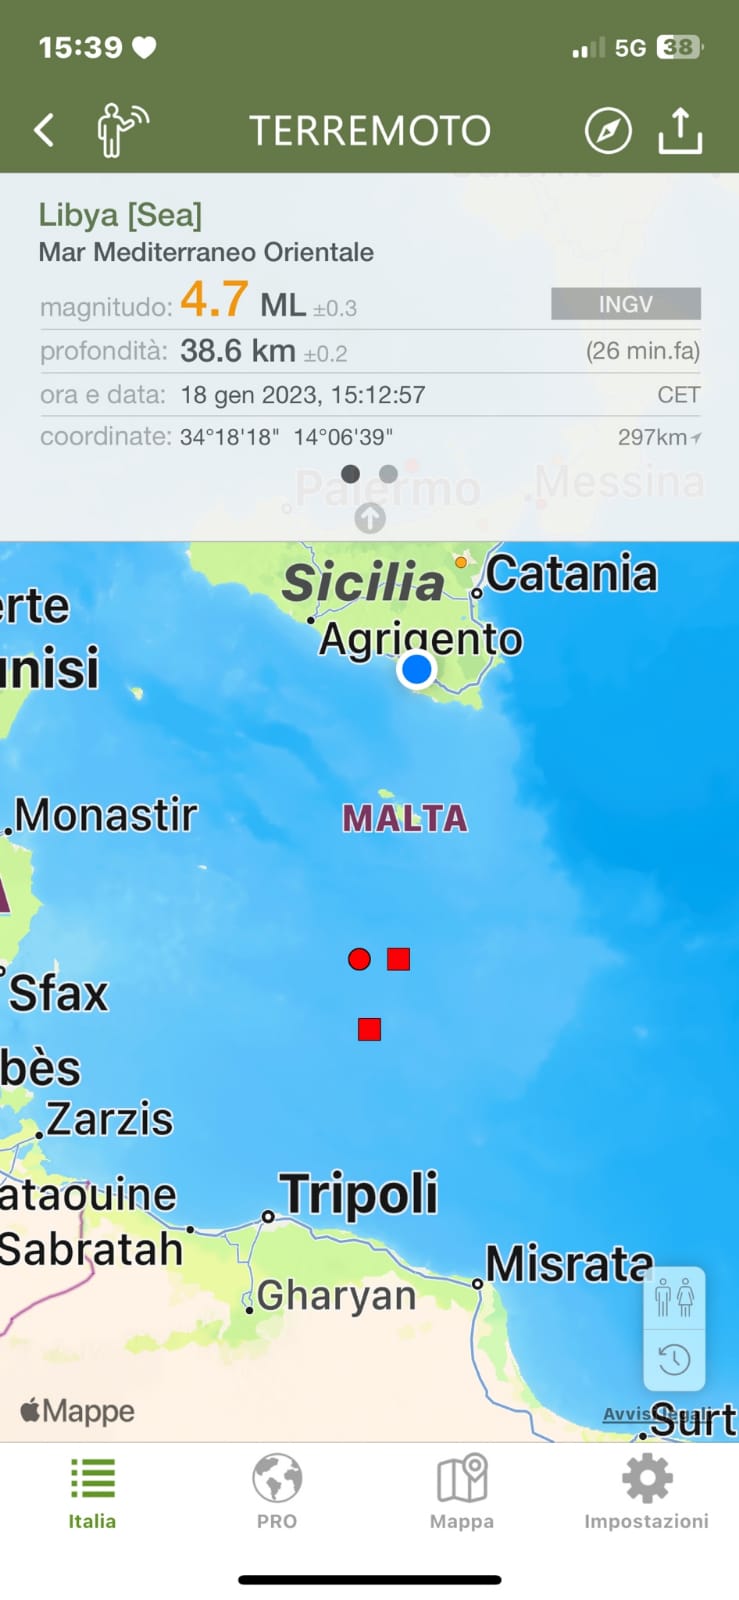 Terremoto di magnitudo ML 4.9 a largo di Malta